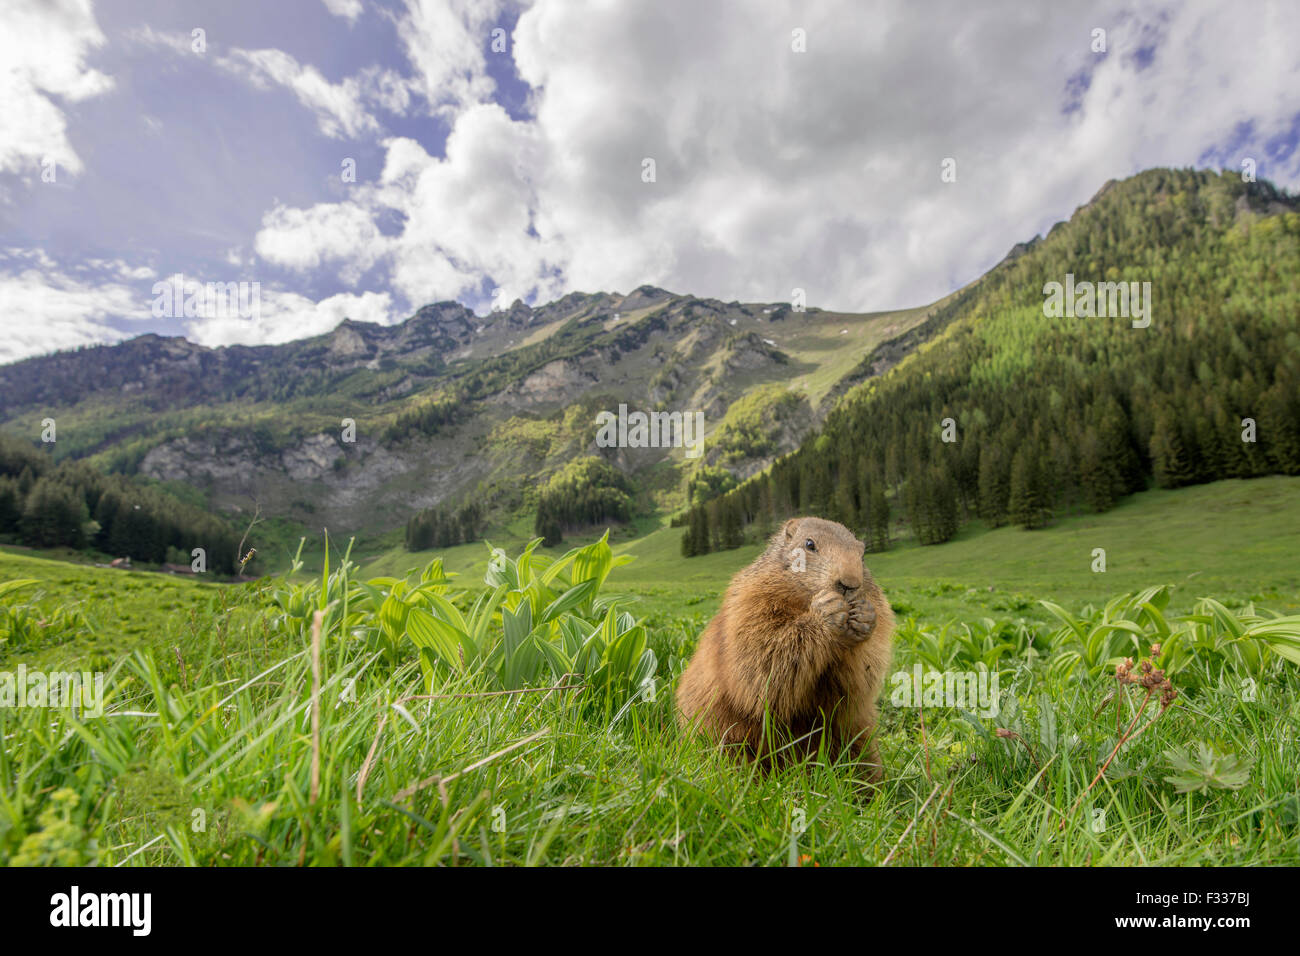 Marmot (Marmota), eating, mountainous scenery, Reichenstein, Styria, Austria Stock Photo